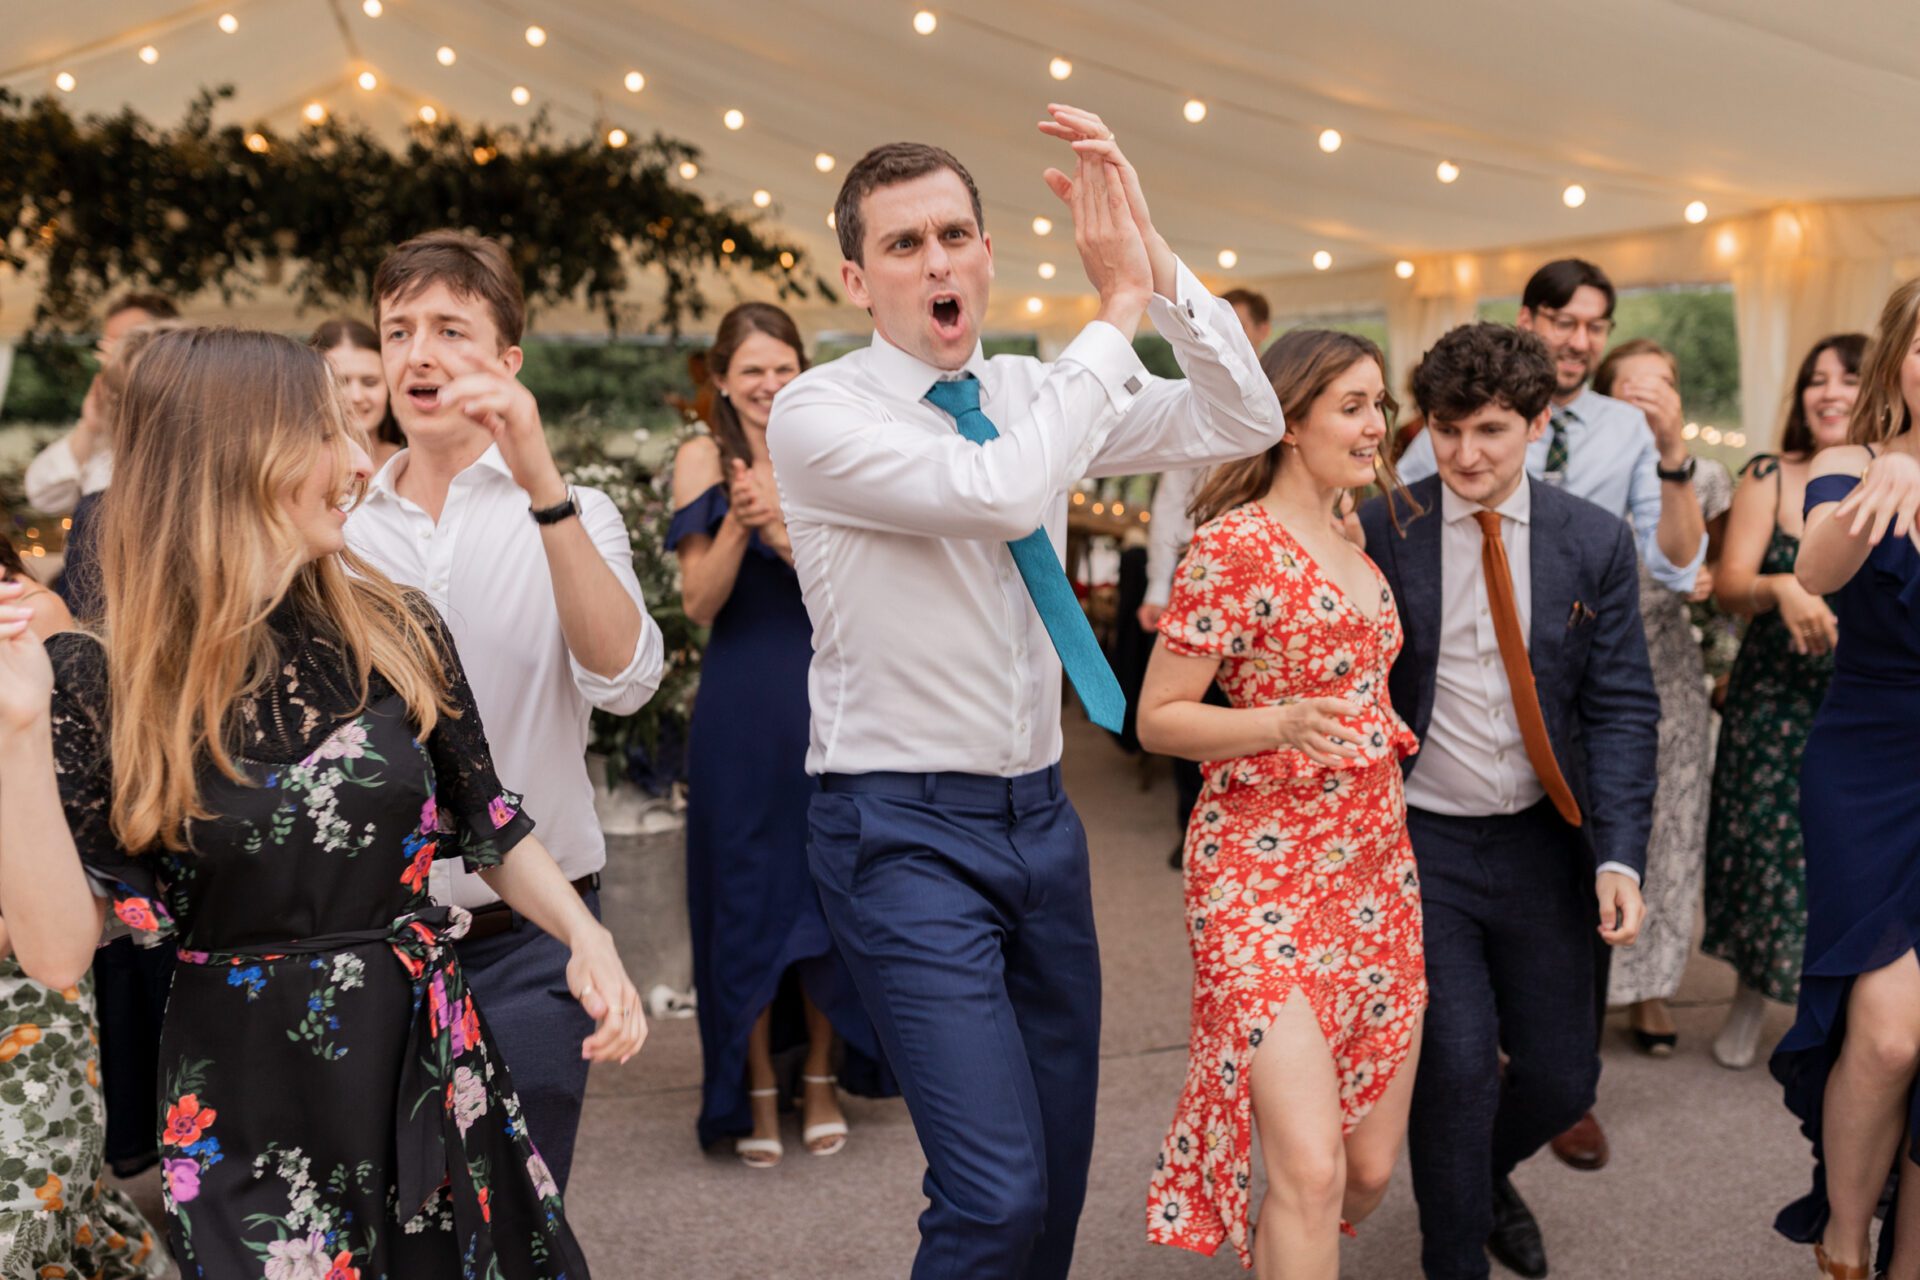 Wedding guests dance at a Devon marquee wedding